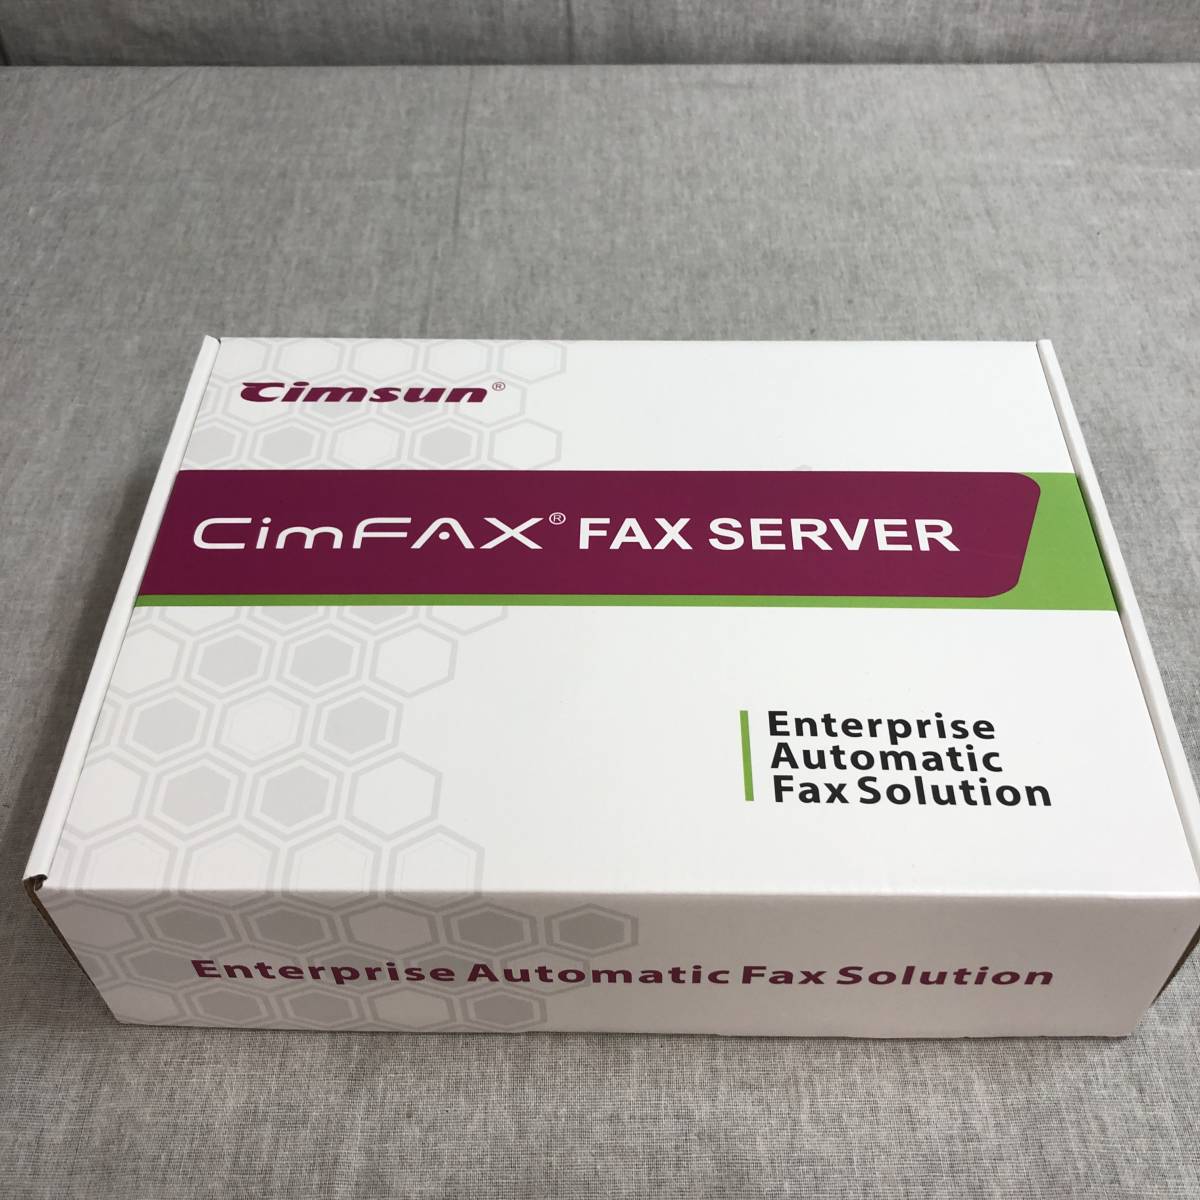  текущее состояние товар CimFAX A5 одиночный линия версия маленький размер FAX сервер факс 256MB емкость скорость 14.4kpbs PC/ смартфон .FAX. передача 